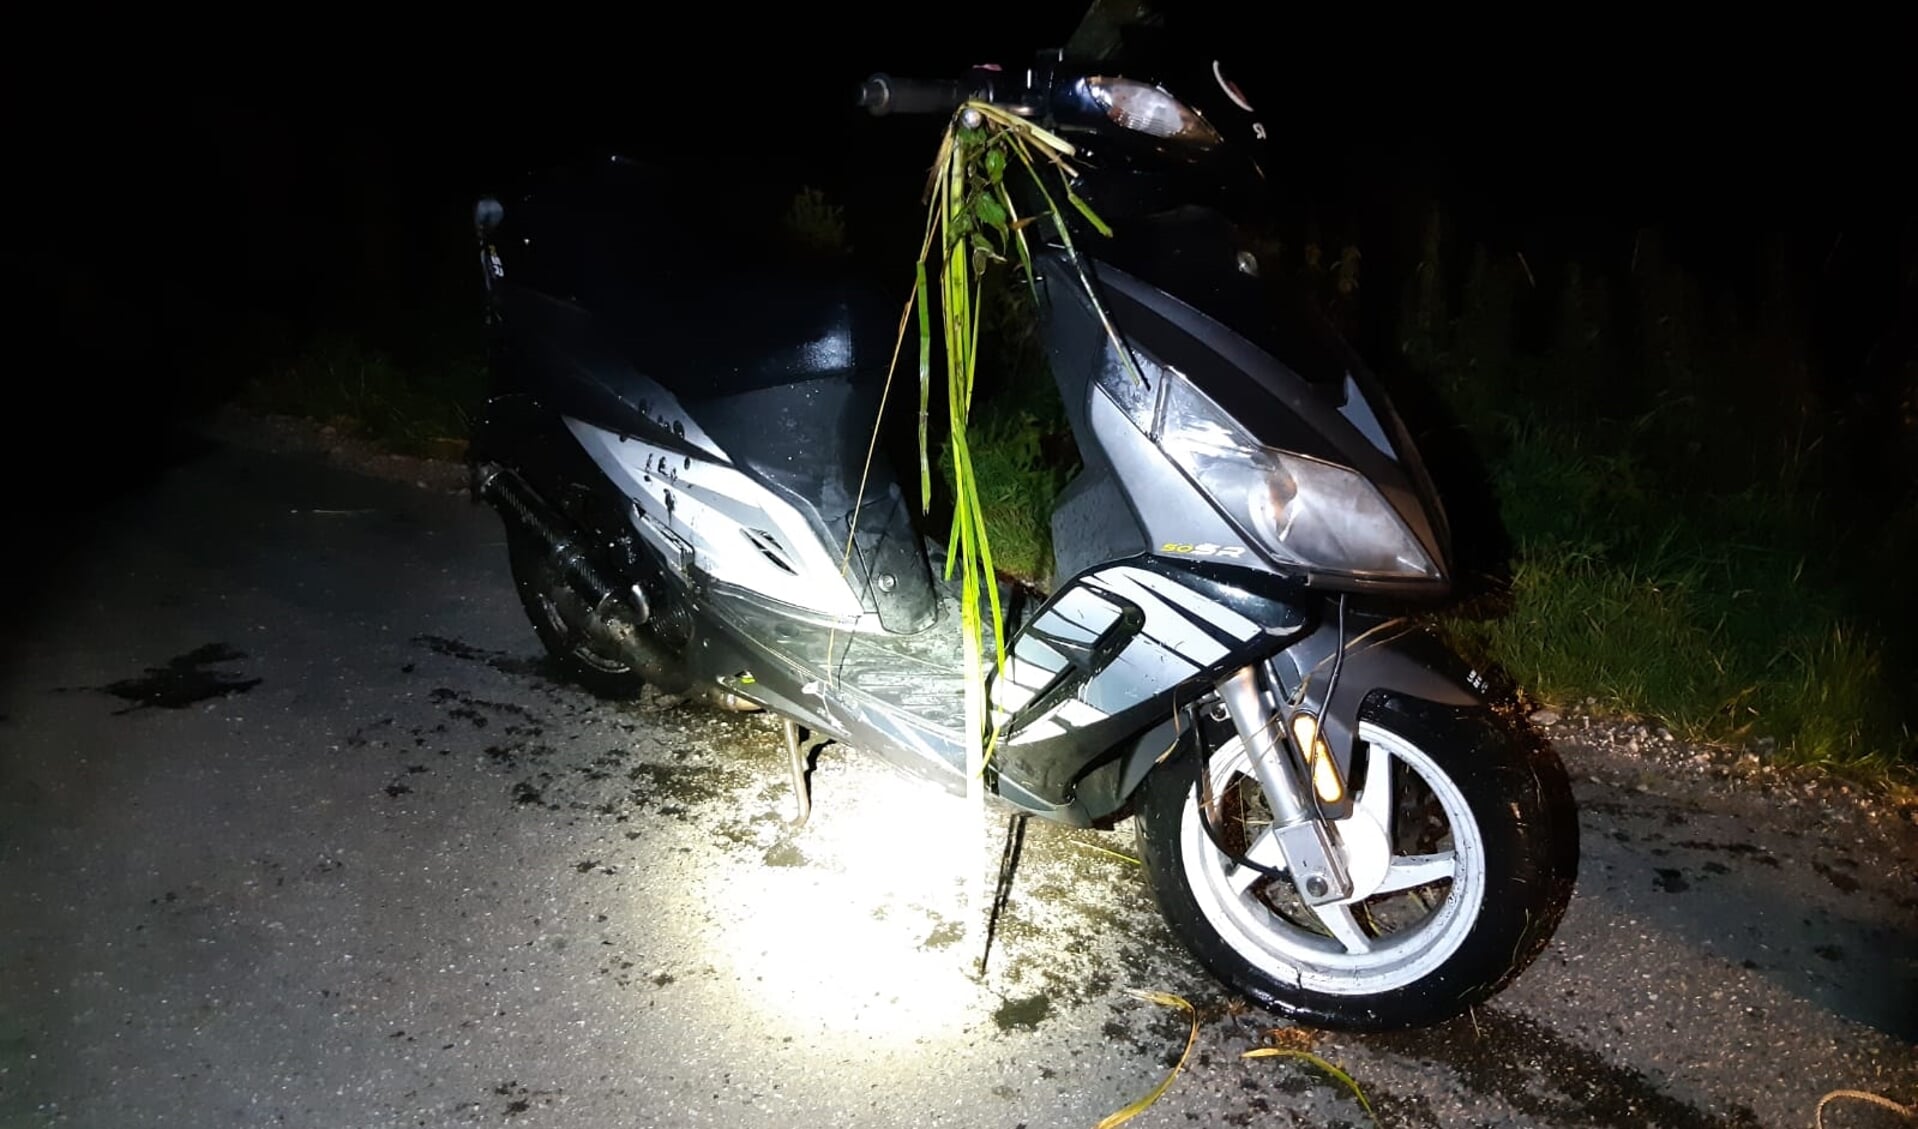 • Agenten haalden de bestuurder en zijn voertuig uit de sloot. De scooter bleek flink beschadigd. 